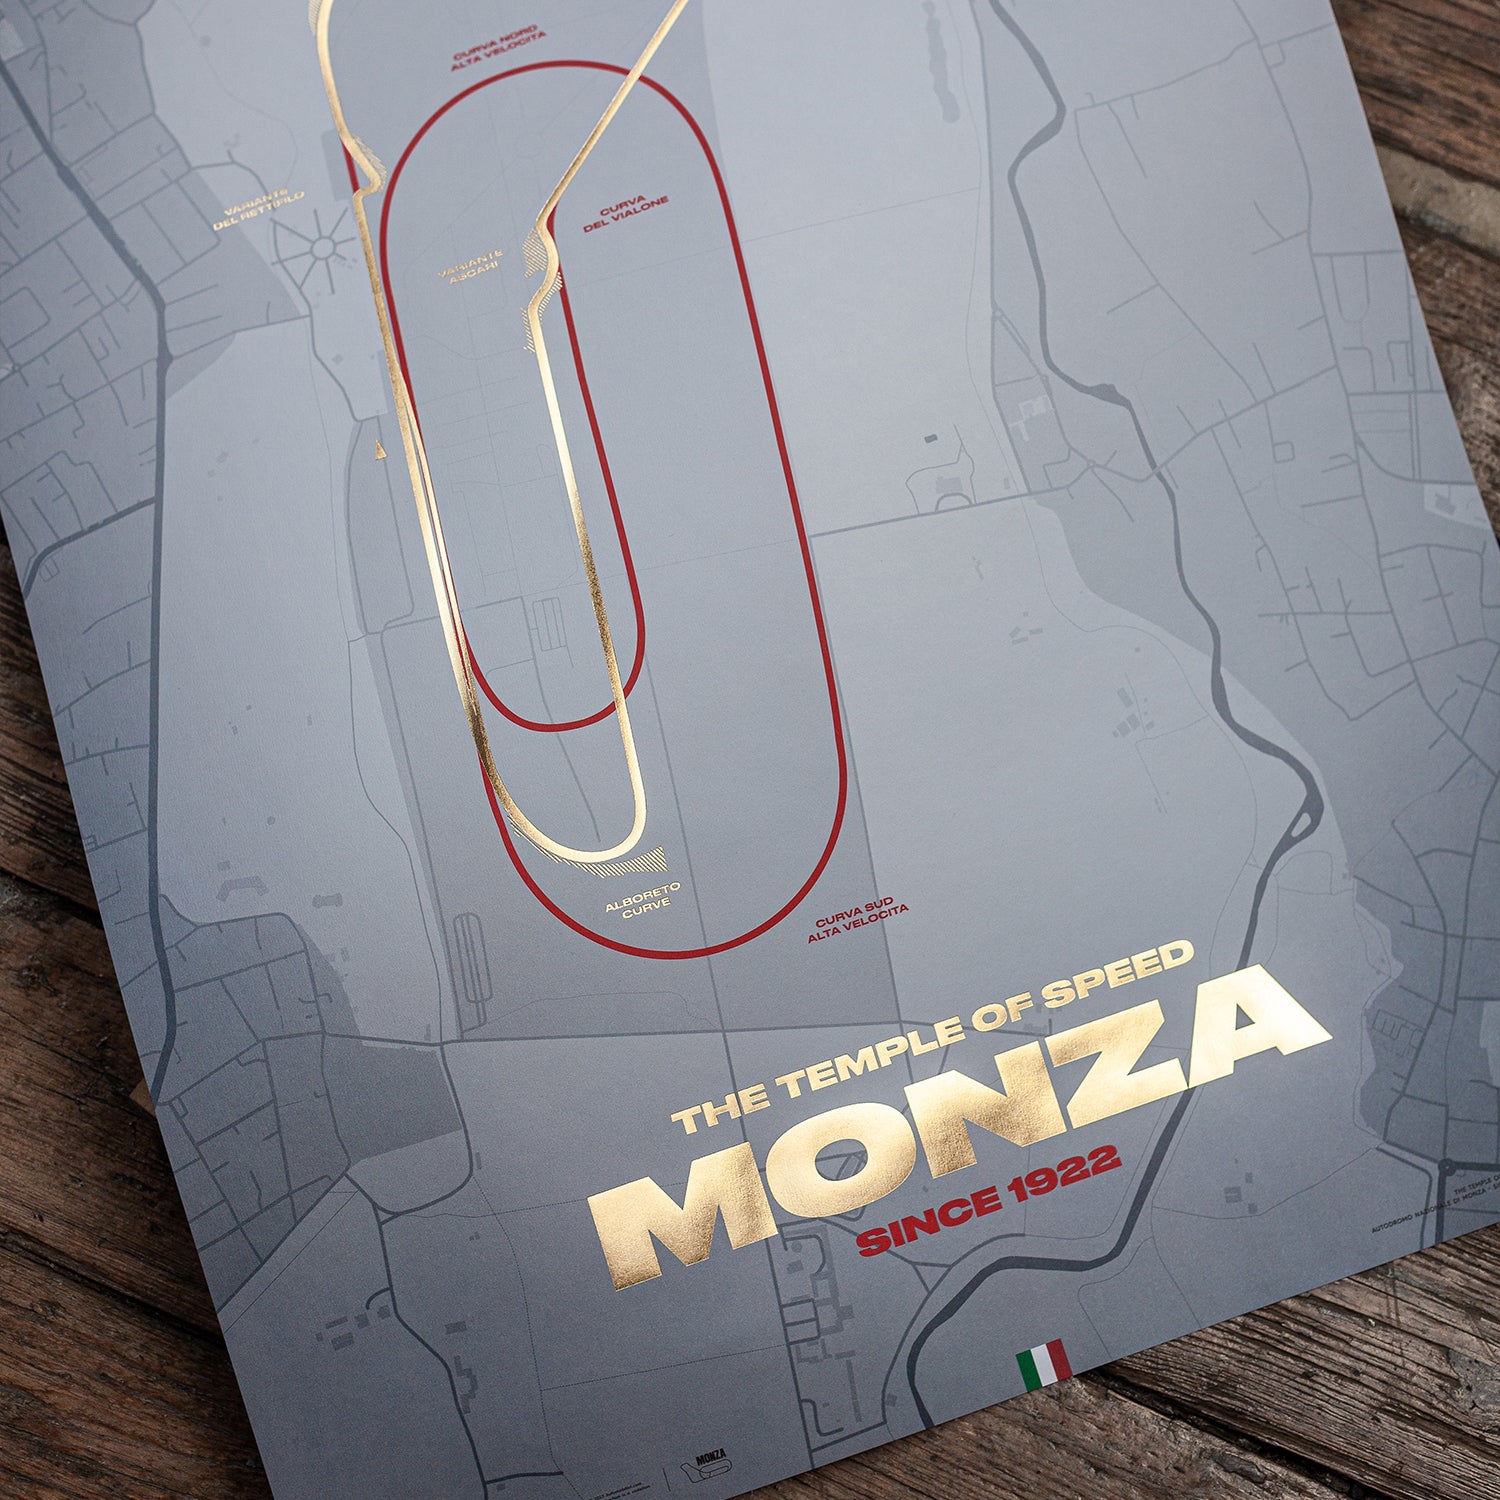 Circuit de Monza - Track Evolution - Le Temple de la Vitesse